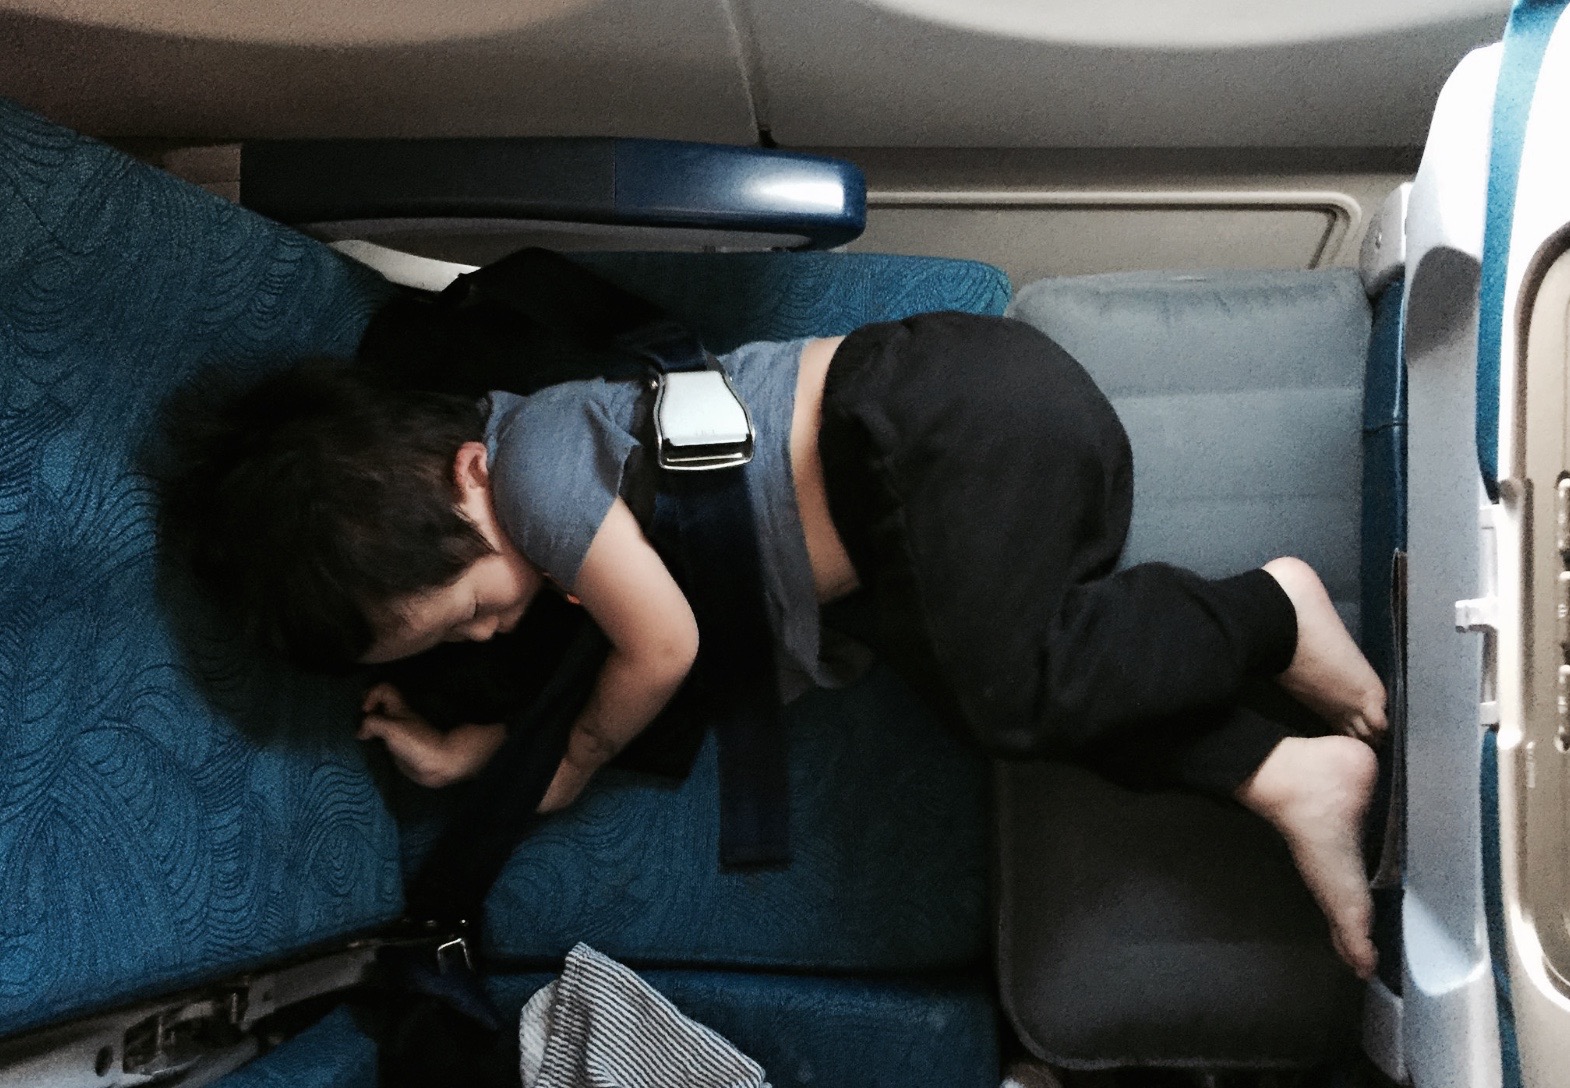 La valise siège jetkids : le confort pour bébé en avion